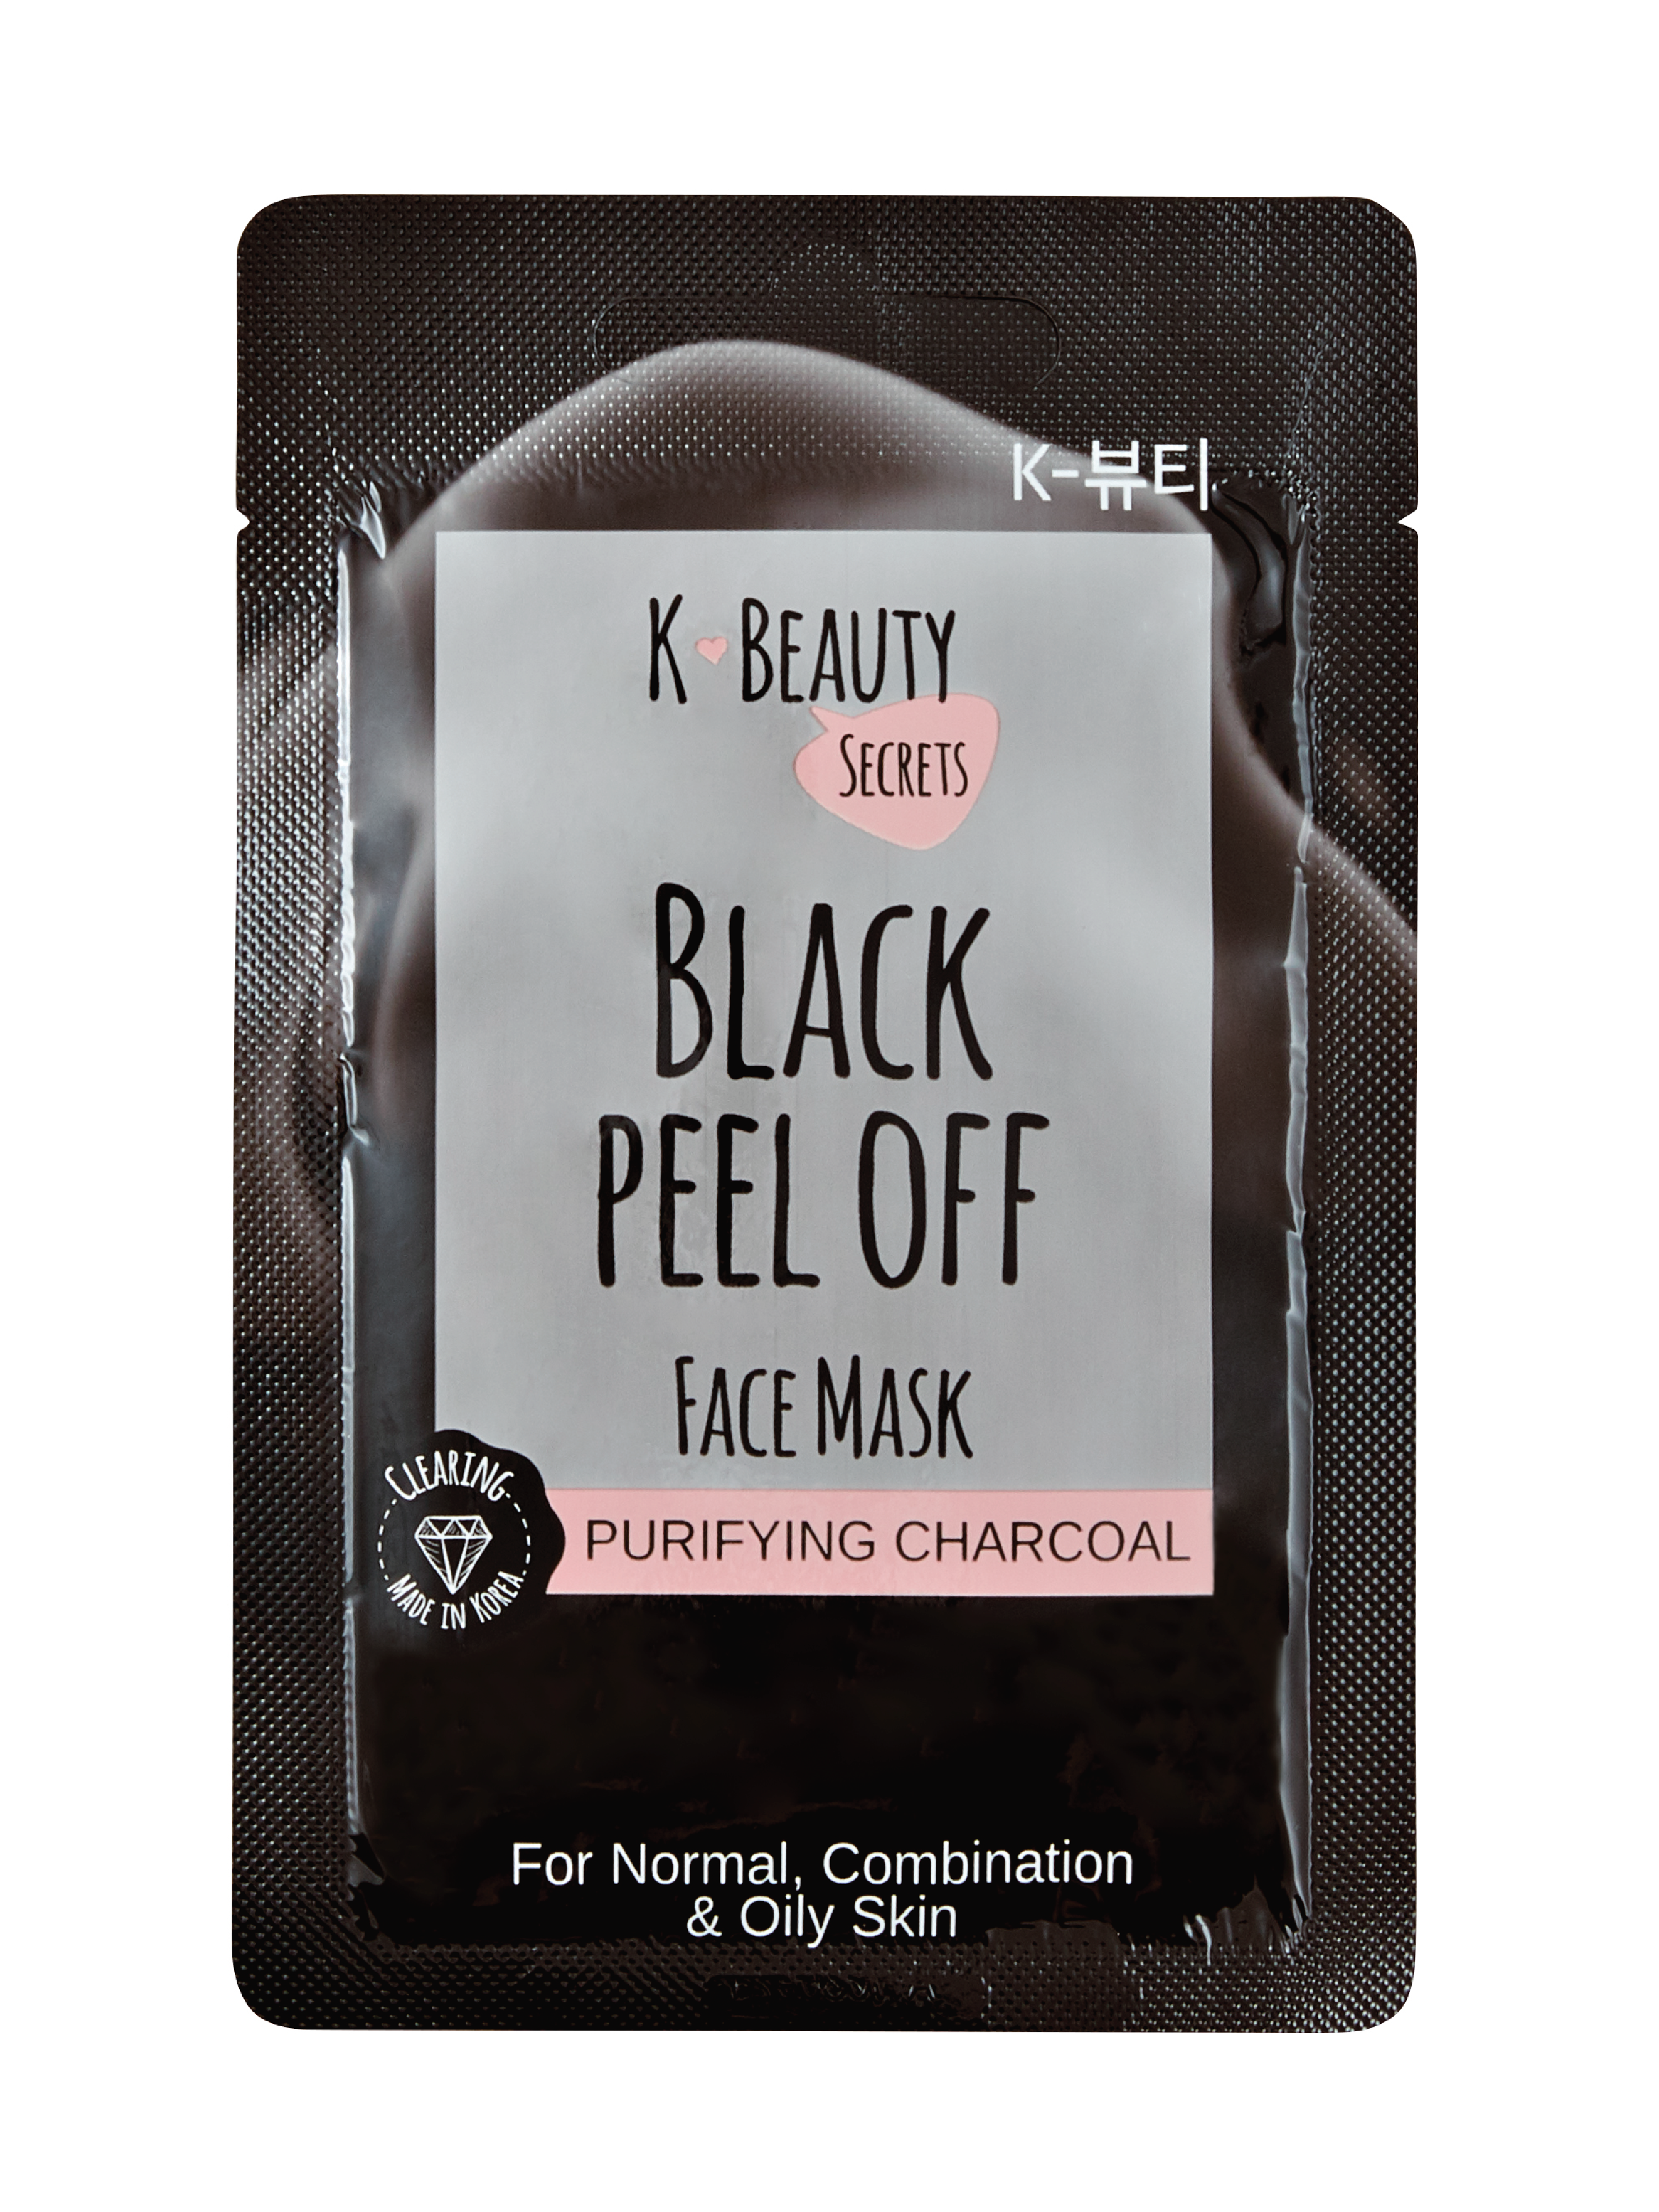 K-Beauty Secrets Black Peel Off Mask, 1 stk.